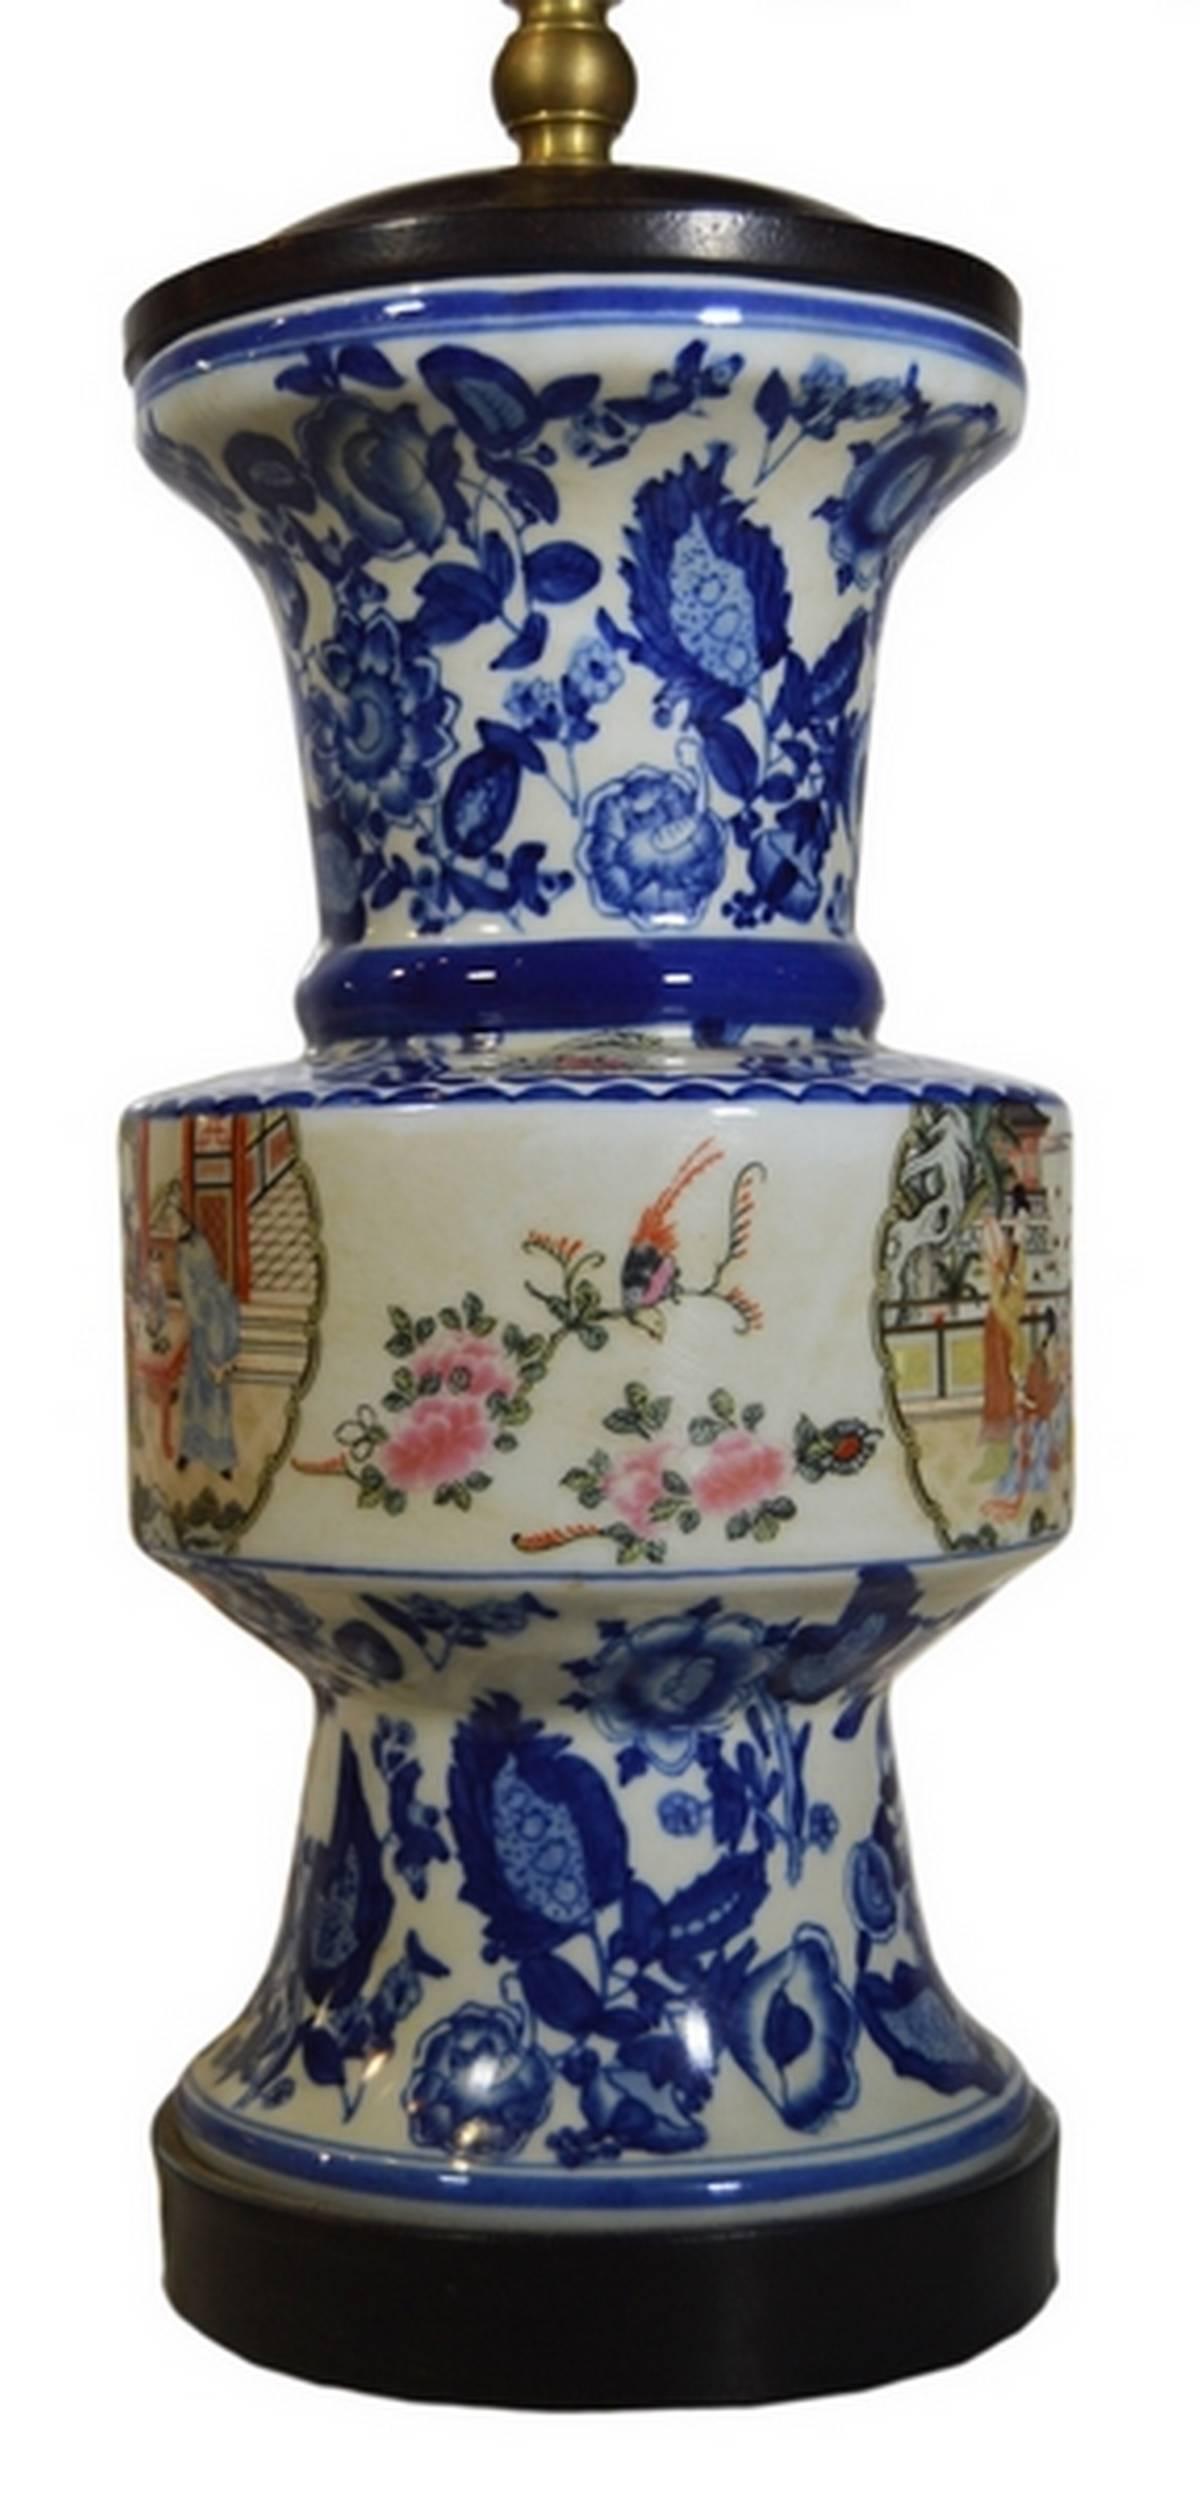 Lampe chinoise en porcelaine des années 1970 avec des caractères peints à la main. Cette lampe haute présente trois sections. La partie centrale est cylindrique et présente une scène de palais chinois peinte à la main représentant un empereur parmi